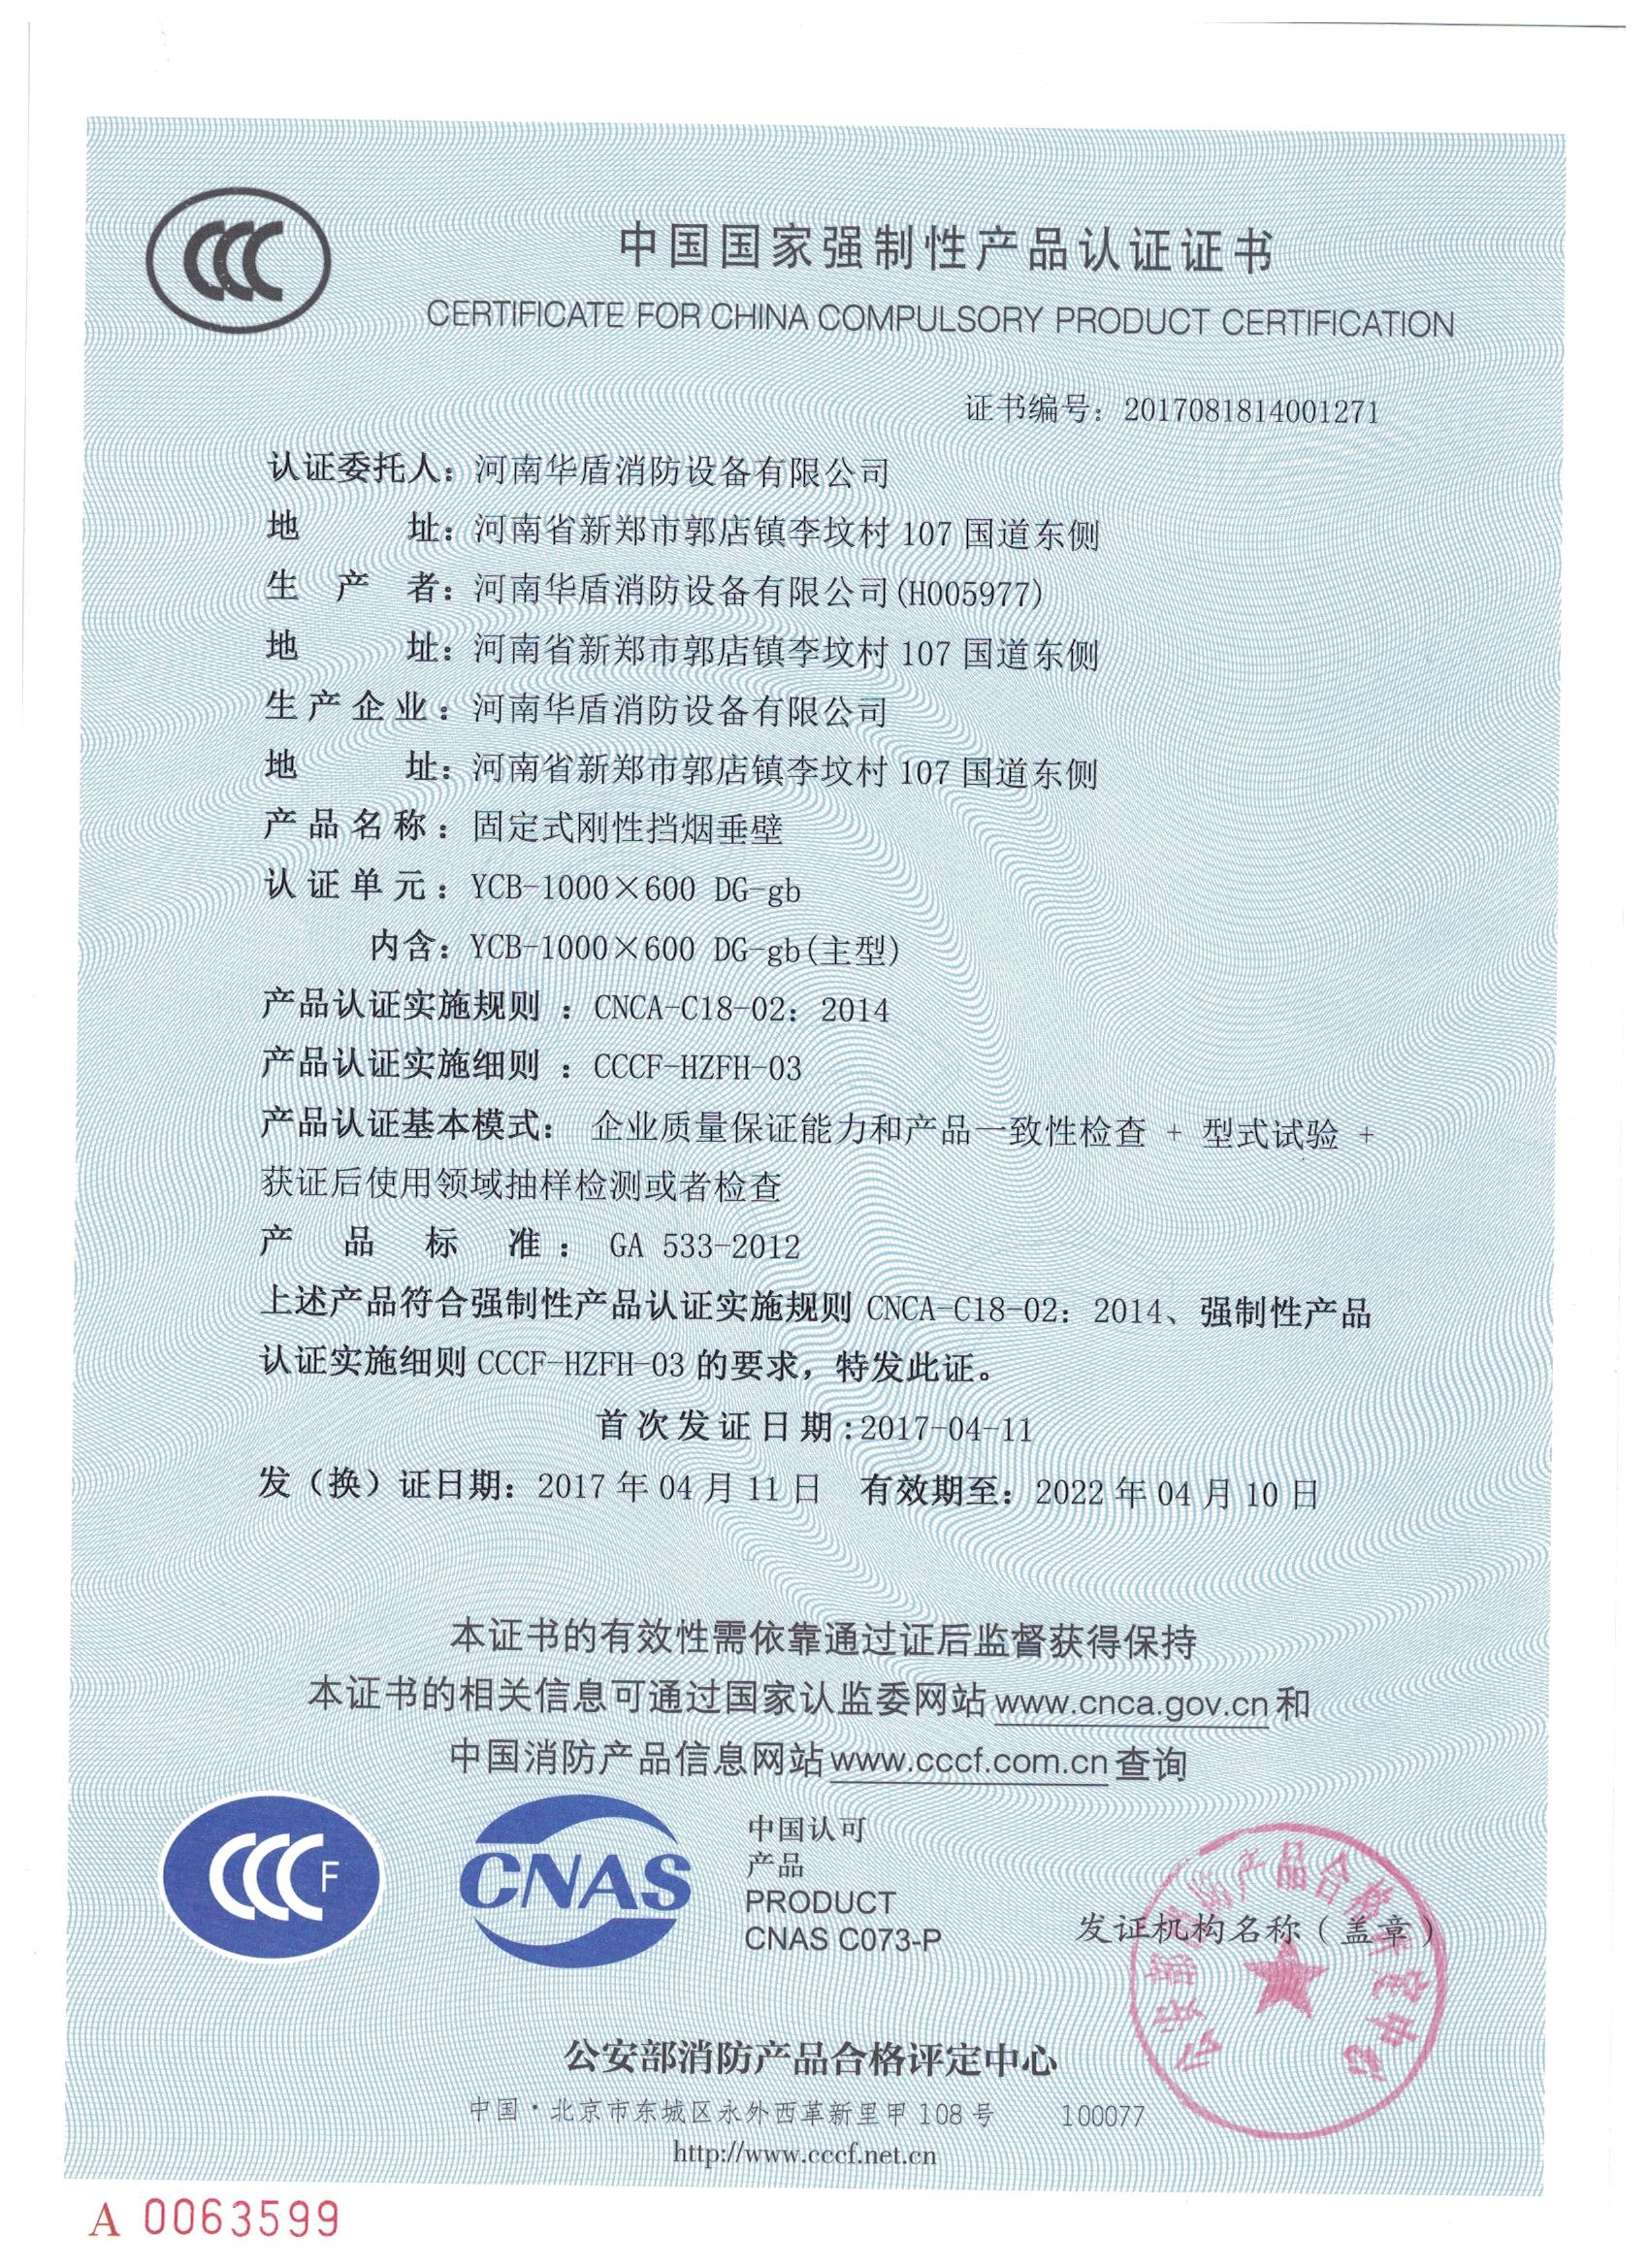 陕西YCB-1000X600 DG-gd-3C证书/检验报告